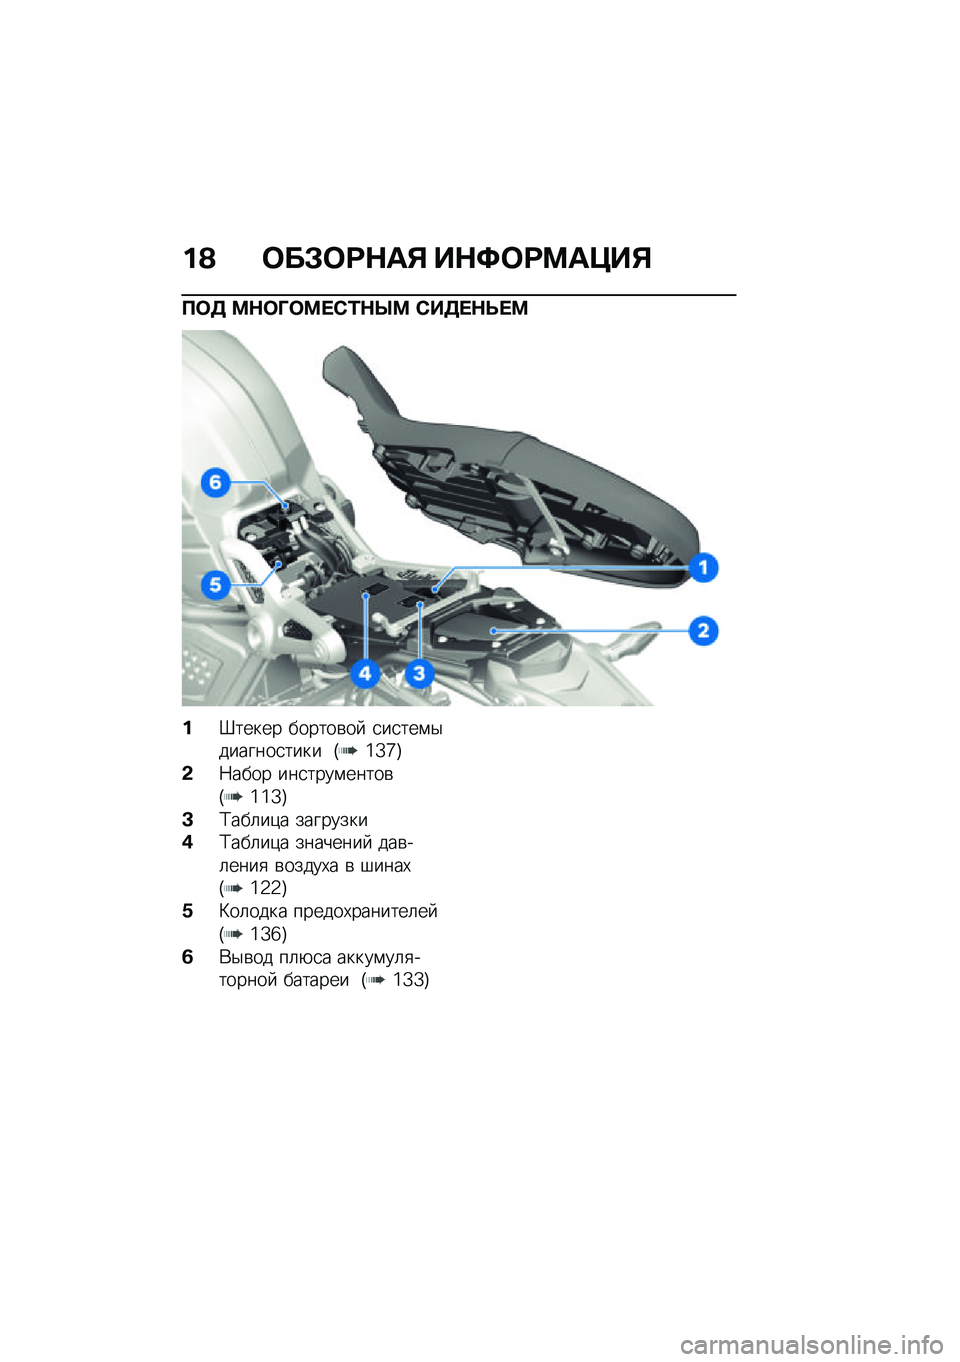 BMW MOTORRAD R NINE T URVAN G/S 2021  Руководство по эксплуатации (in Russian) ��A �	��#�	�:�$��% ��$�;�	�:�<��=��%
�?�	�3 �<�$�	�O�	�<� �)�/�$�Q�< �)��3� �$�F� �<
��d����� ������\b��  �
��
���\f�$�������
���� �G�\�Z�`�H
�&�7���� ���
����